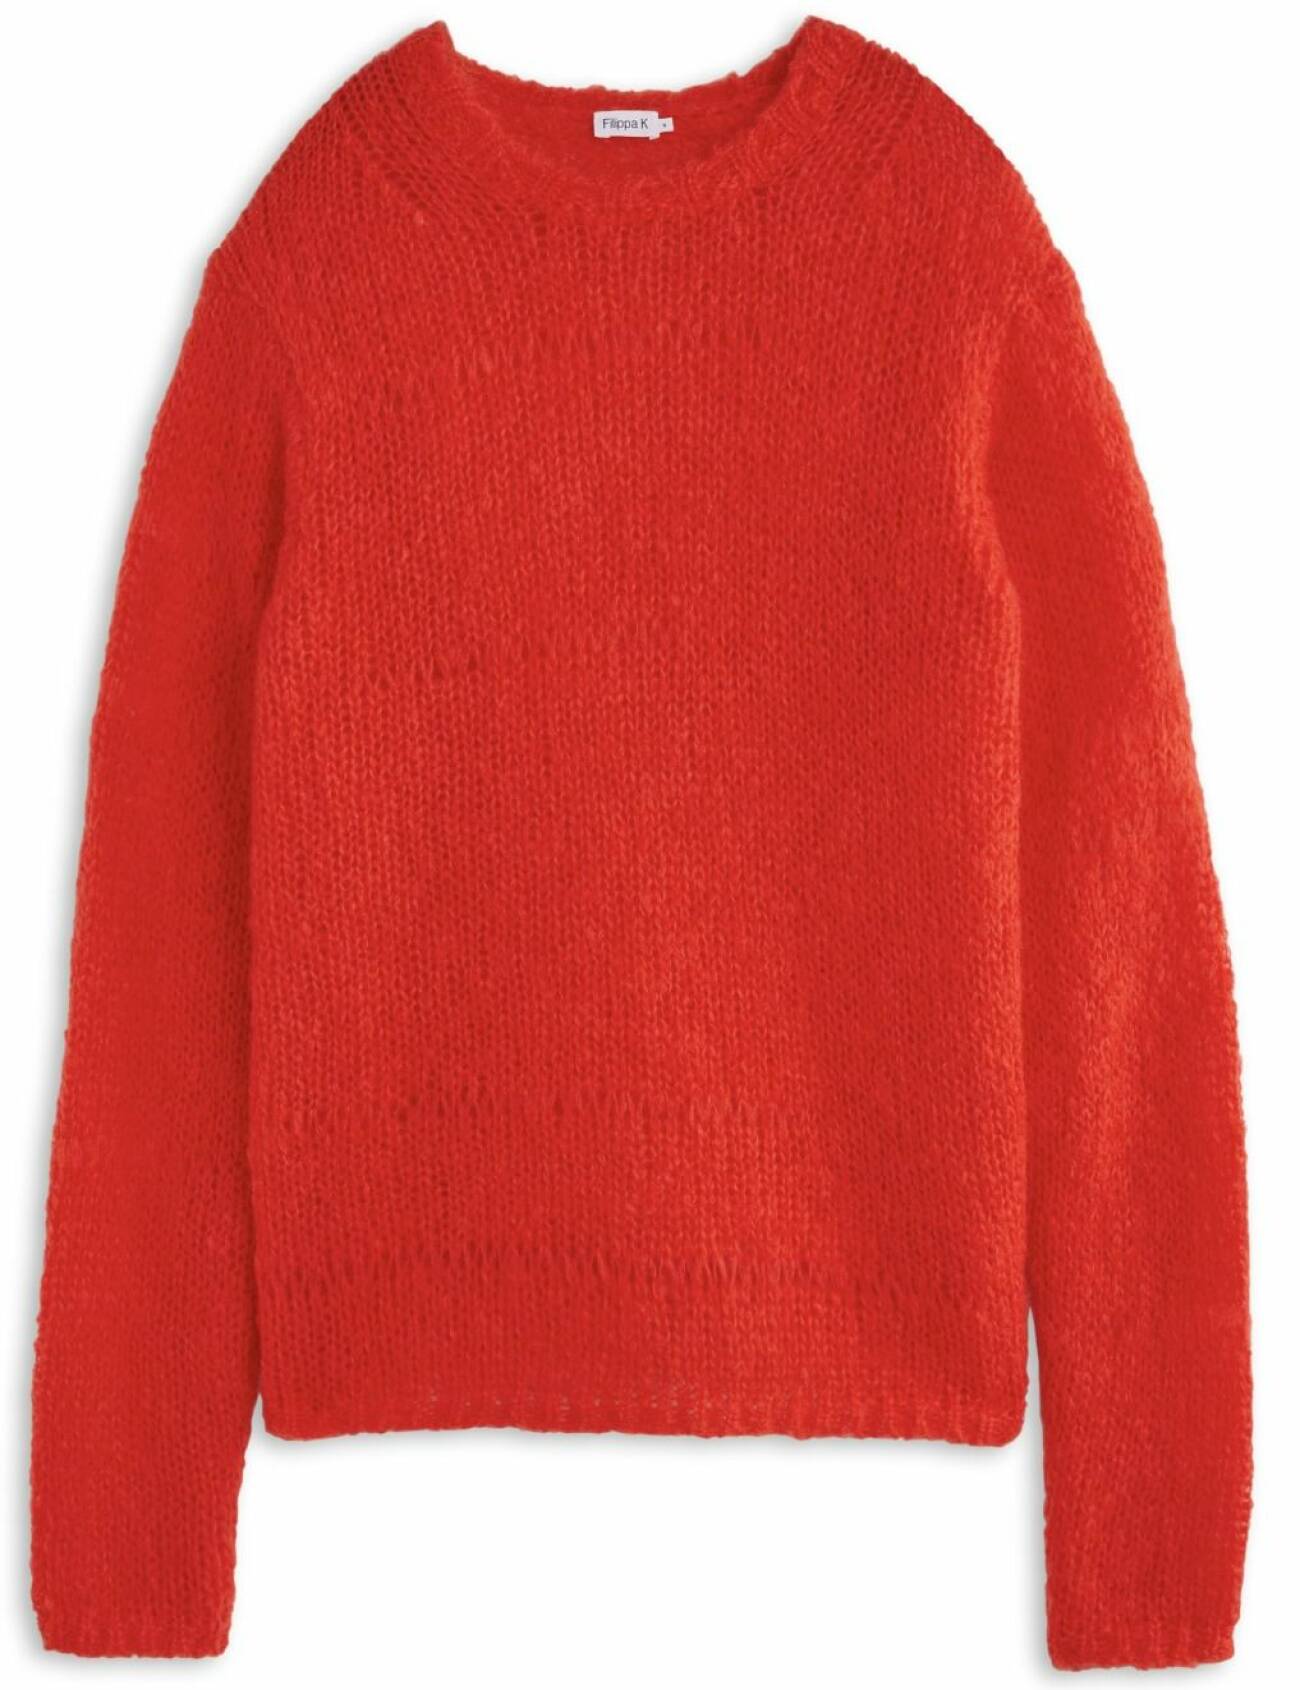 röd mohair tröja från FIlippa K höst 2021.